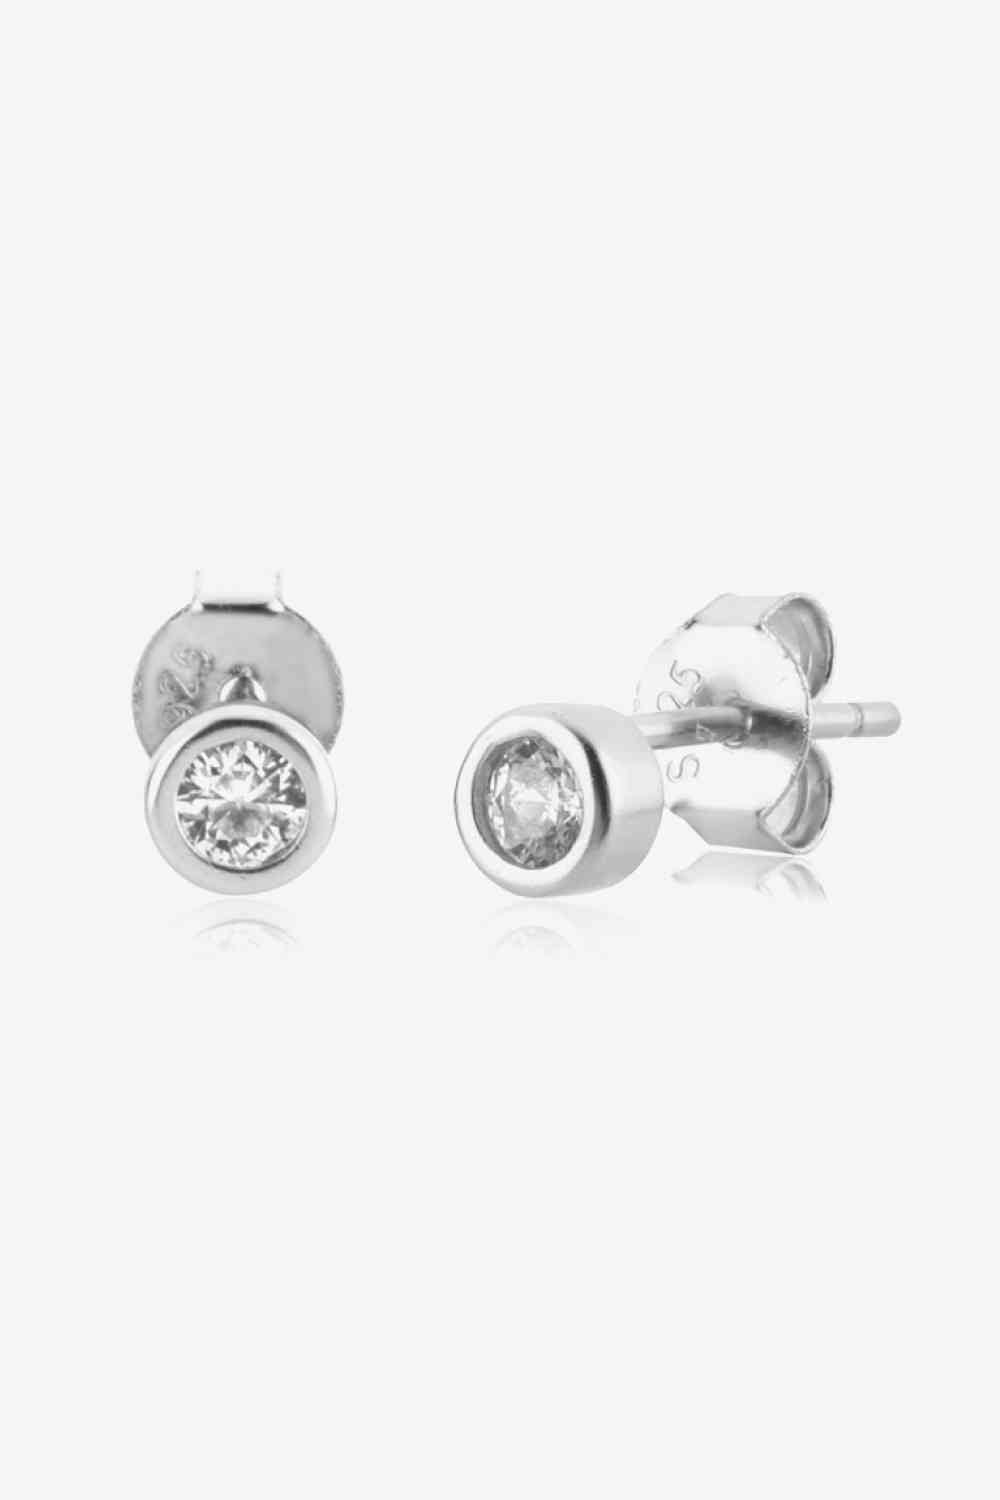 Minimalist Zircon 925 Sterling Silver Earrings